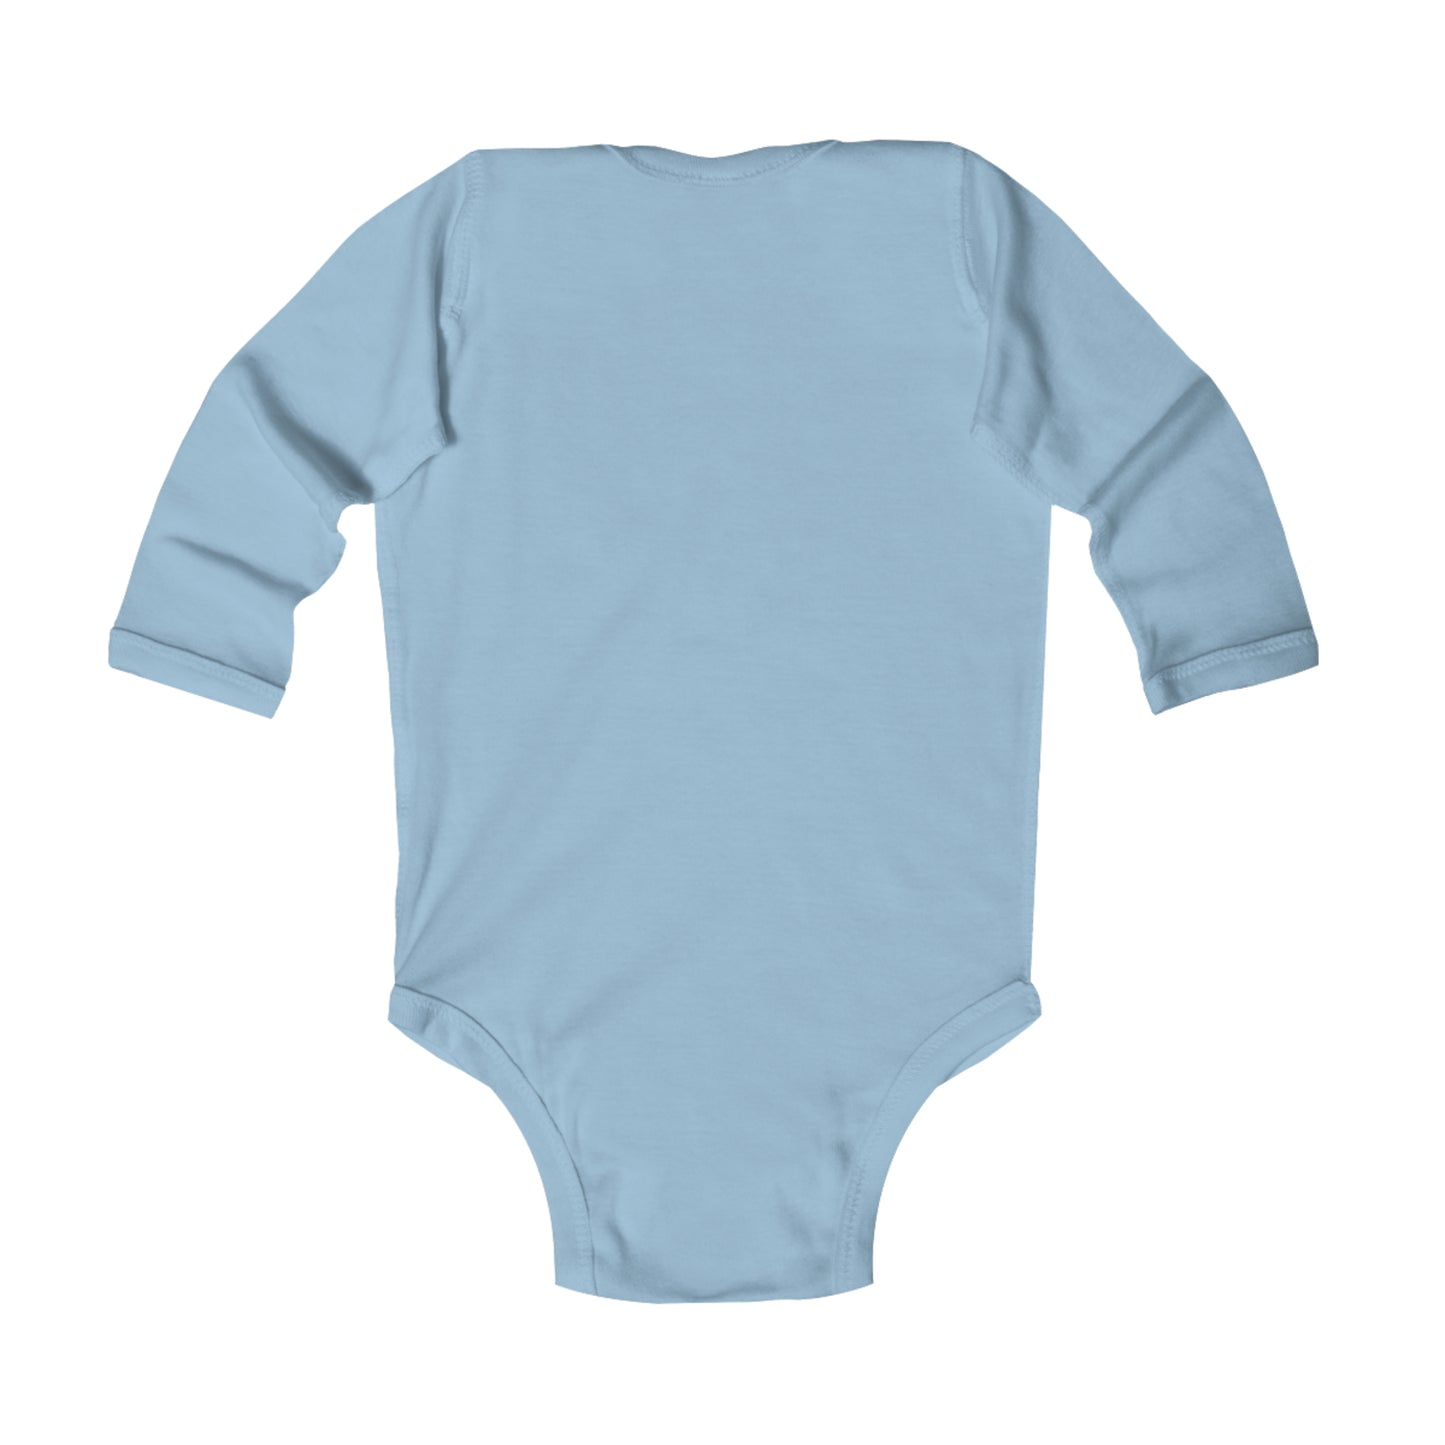 Infant Long Sleeve Bodysuit - Light Up the Night